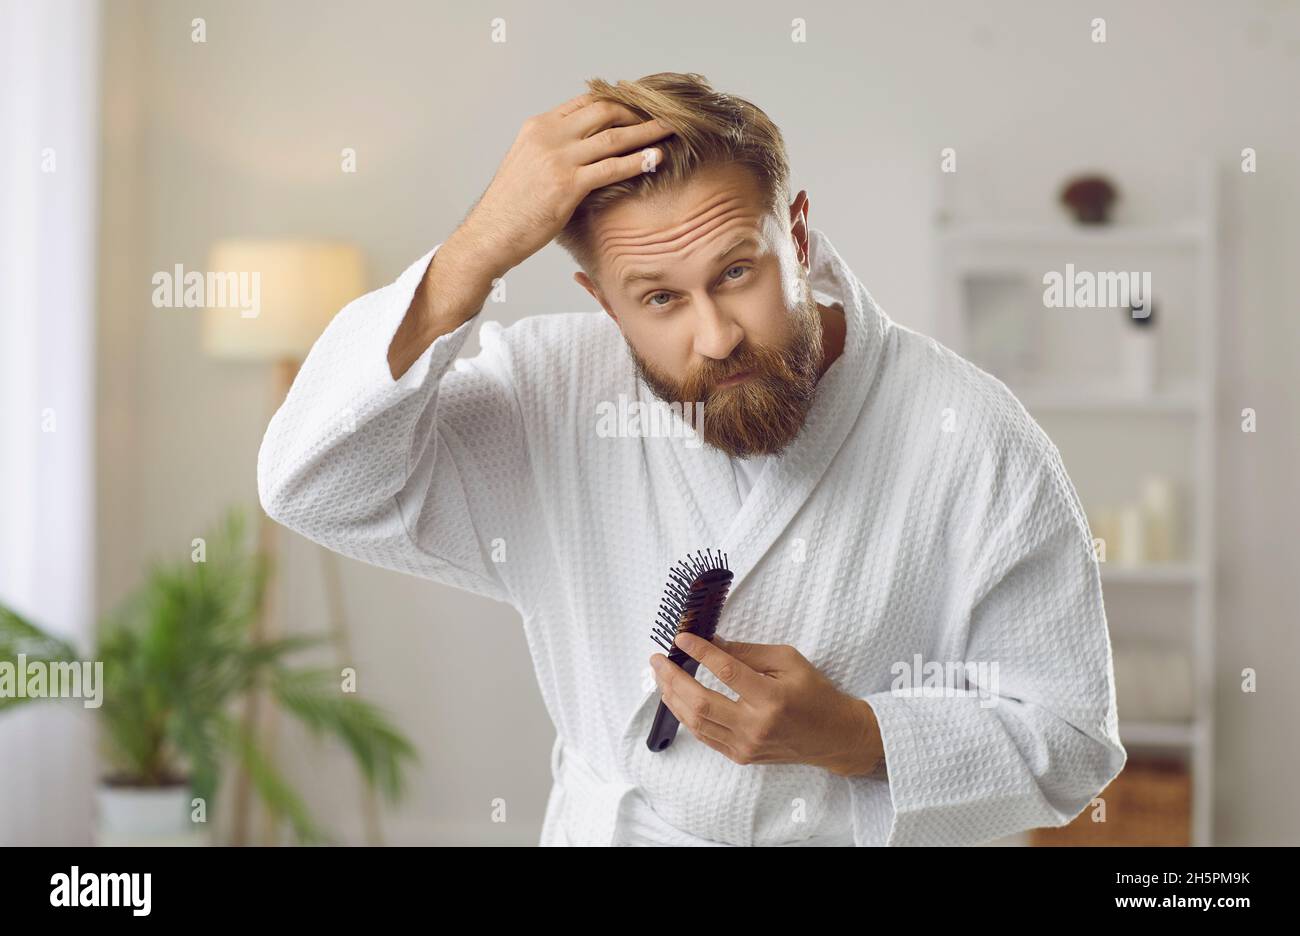 Ein hübscher Mann, der mit dem Problem des Haarausfalls konfrontiert war und in seinem Badezimmer in einen Spiegel schaute Stockfoto